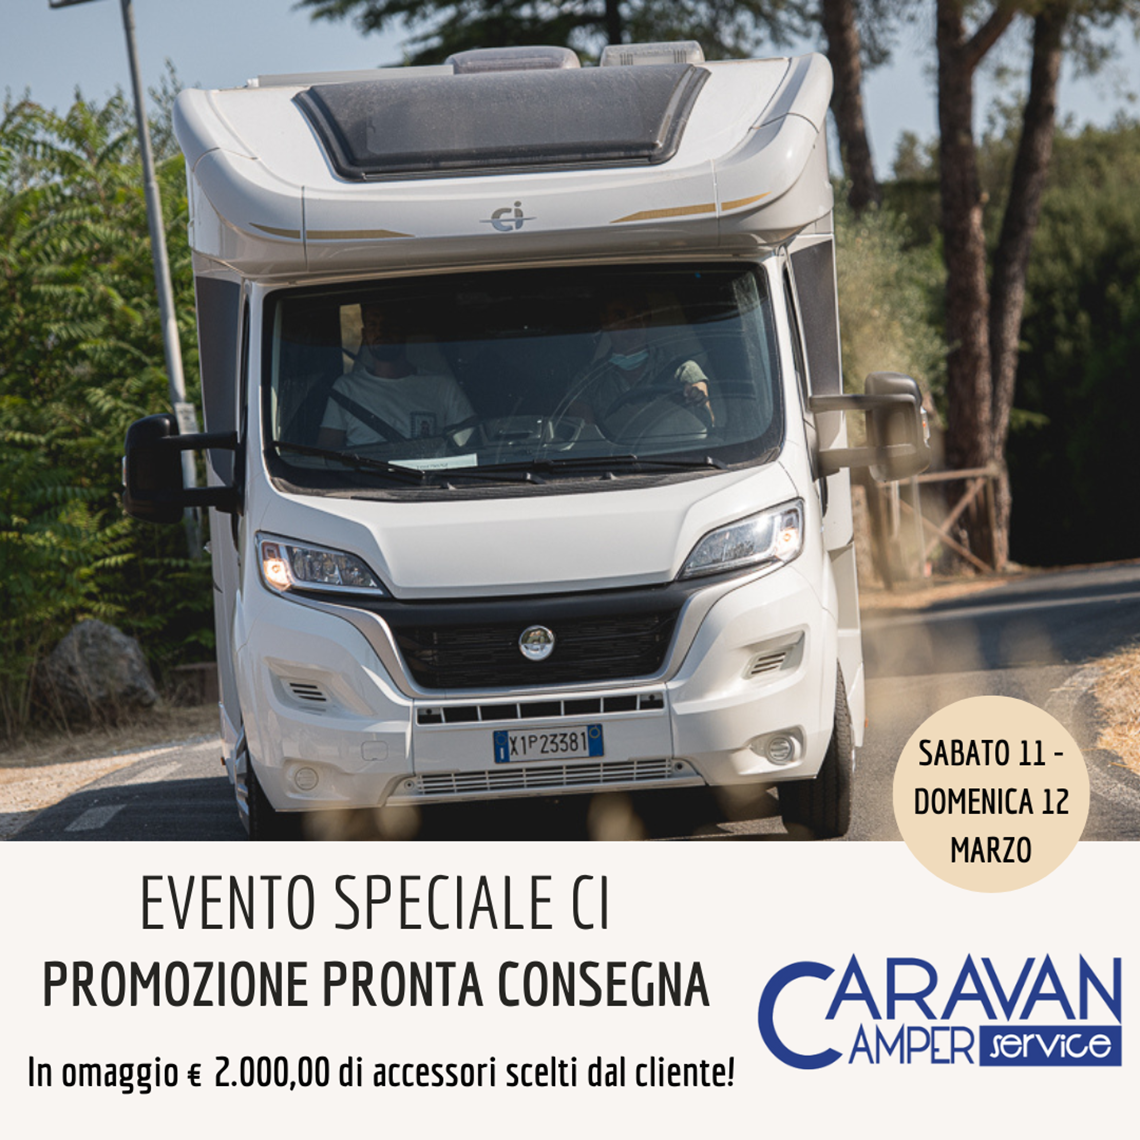 Evento speciale CI- Caravan Camper Service.png